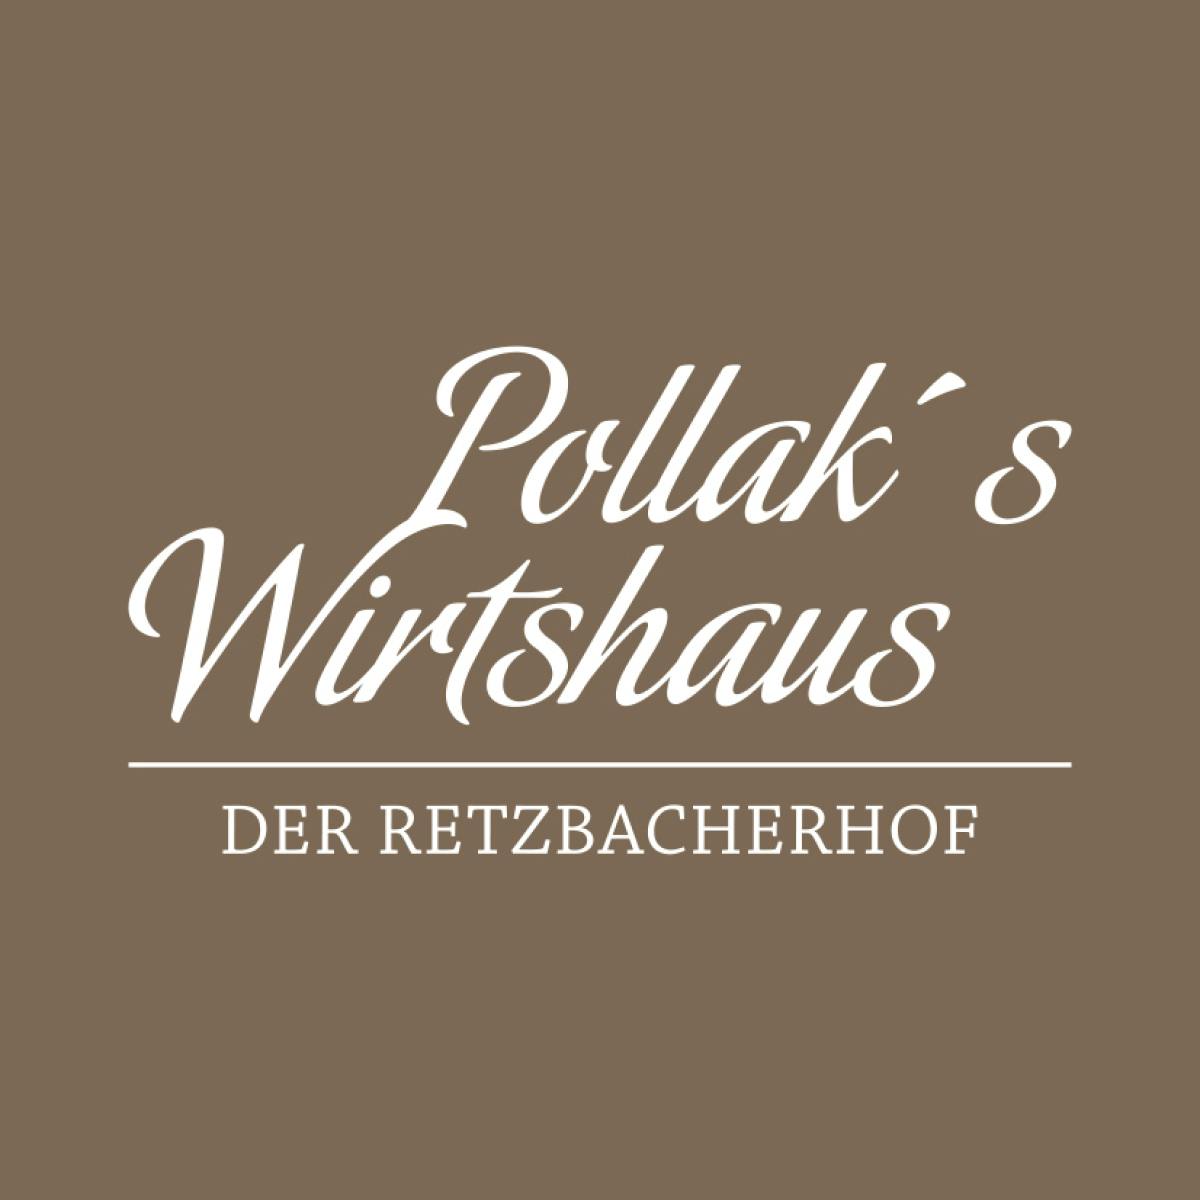 Pollak's Wirtshaus 